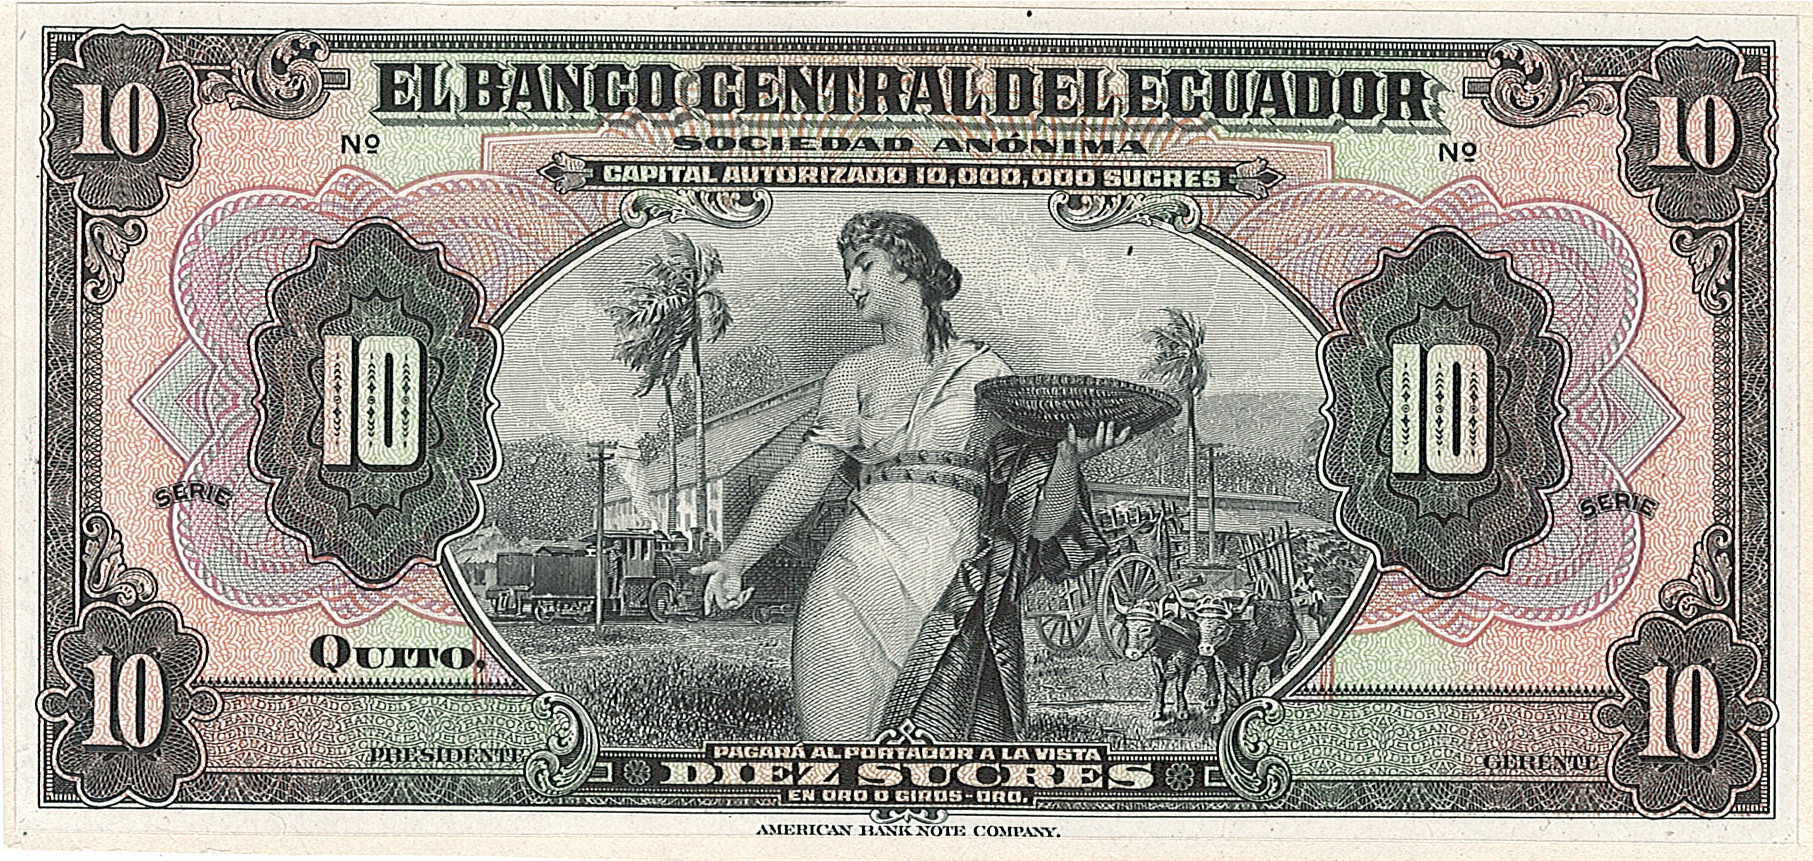 Banco Central Del Ecuador, 10 Sucres, Эквадор